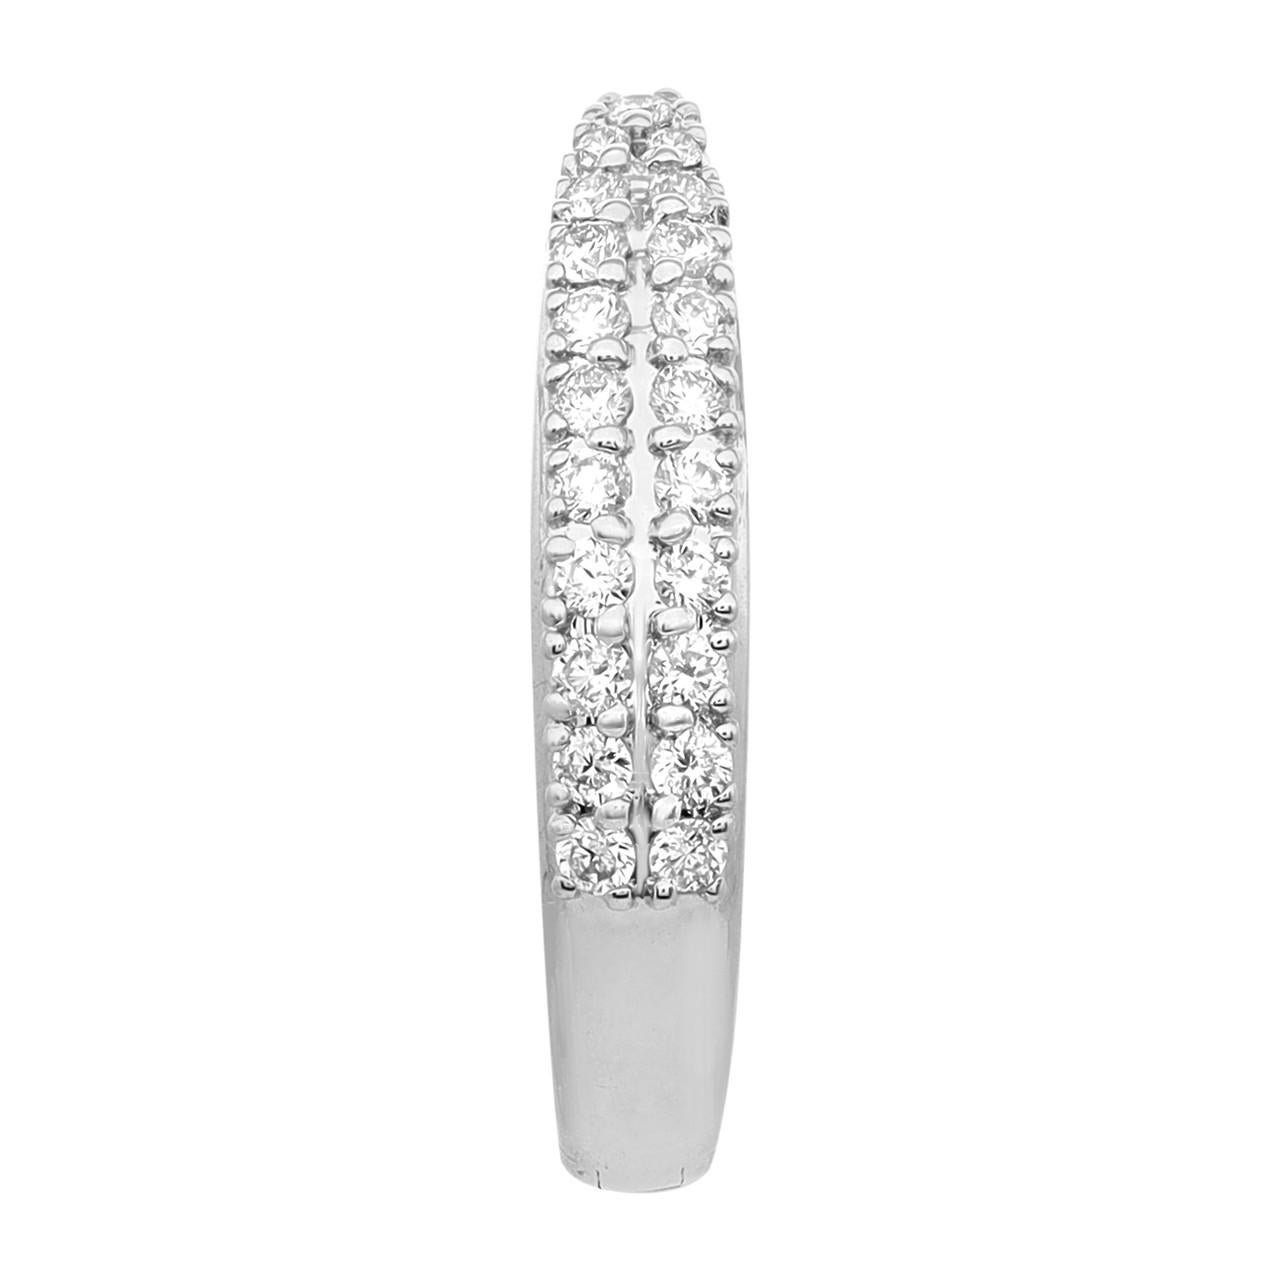 Lassen Sie sich von der Eleganz der exquisiten 0,40-Karat-Diamant-Ohrringe in 18 Karat Weißgold verzaubern. Diese Huggie-Ohrringe sind der Inbegriff von Raffinesse und Charme. Jeder Ohrring besteht aus zwei Reihen funkelnder Diamanten, die